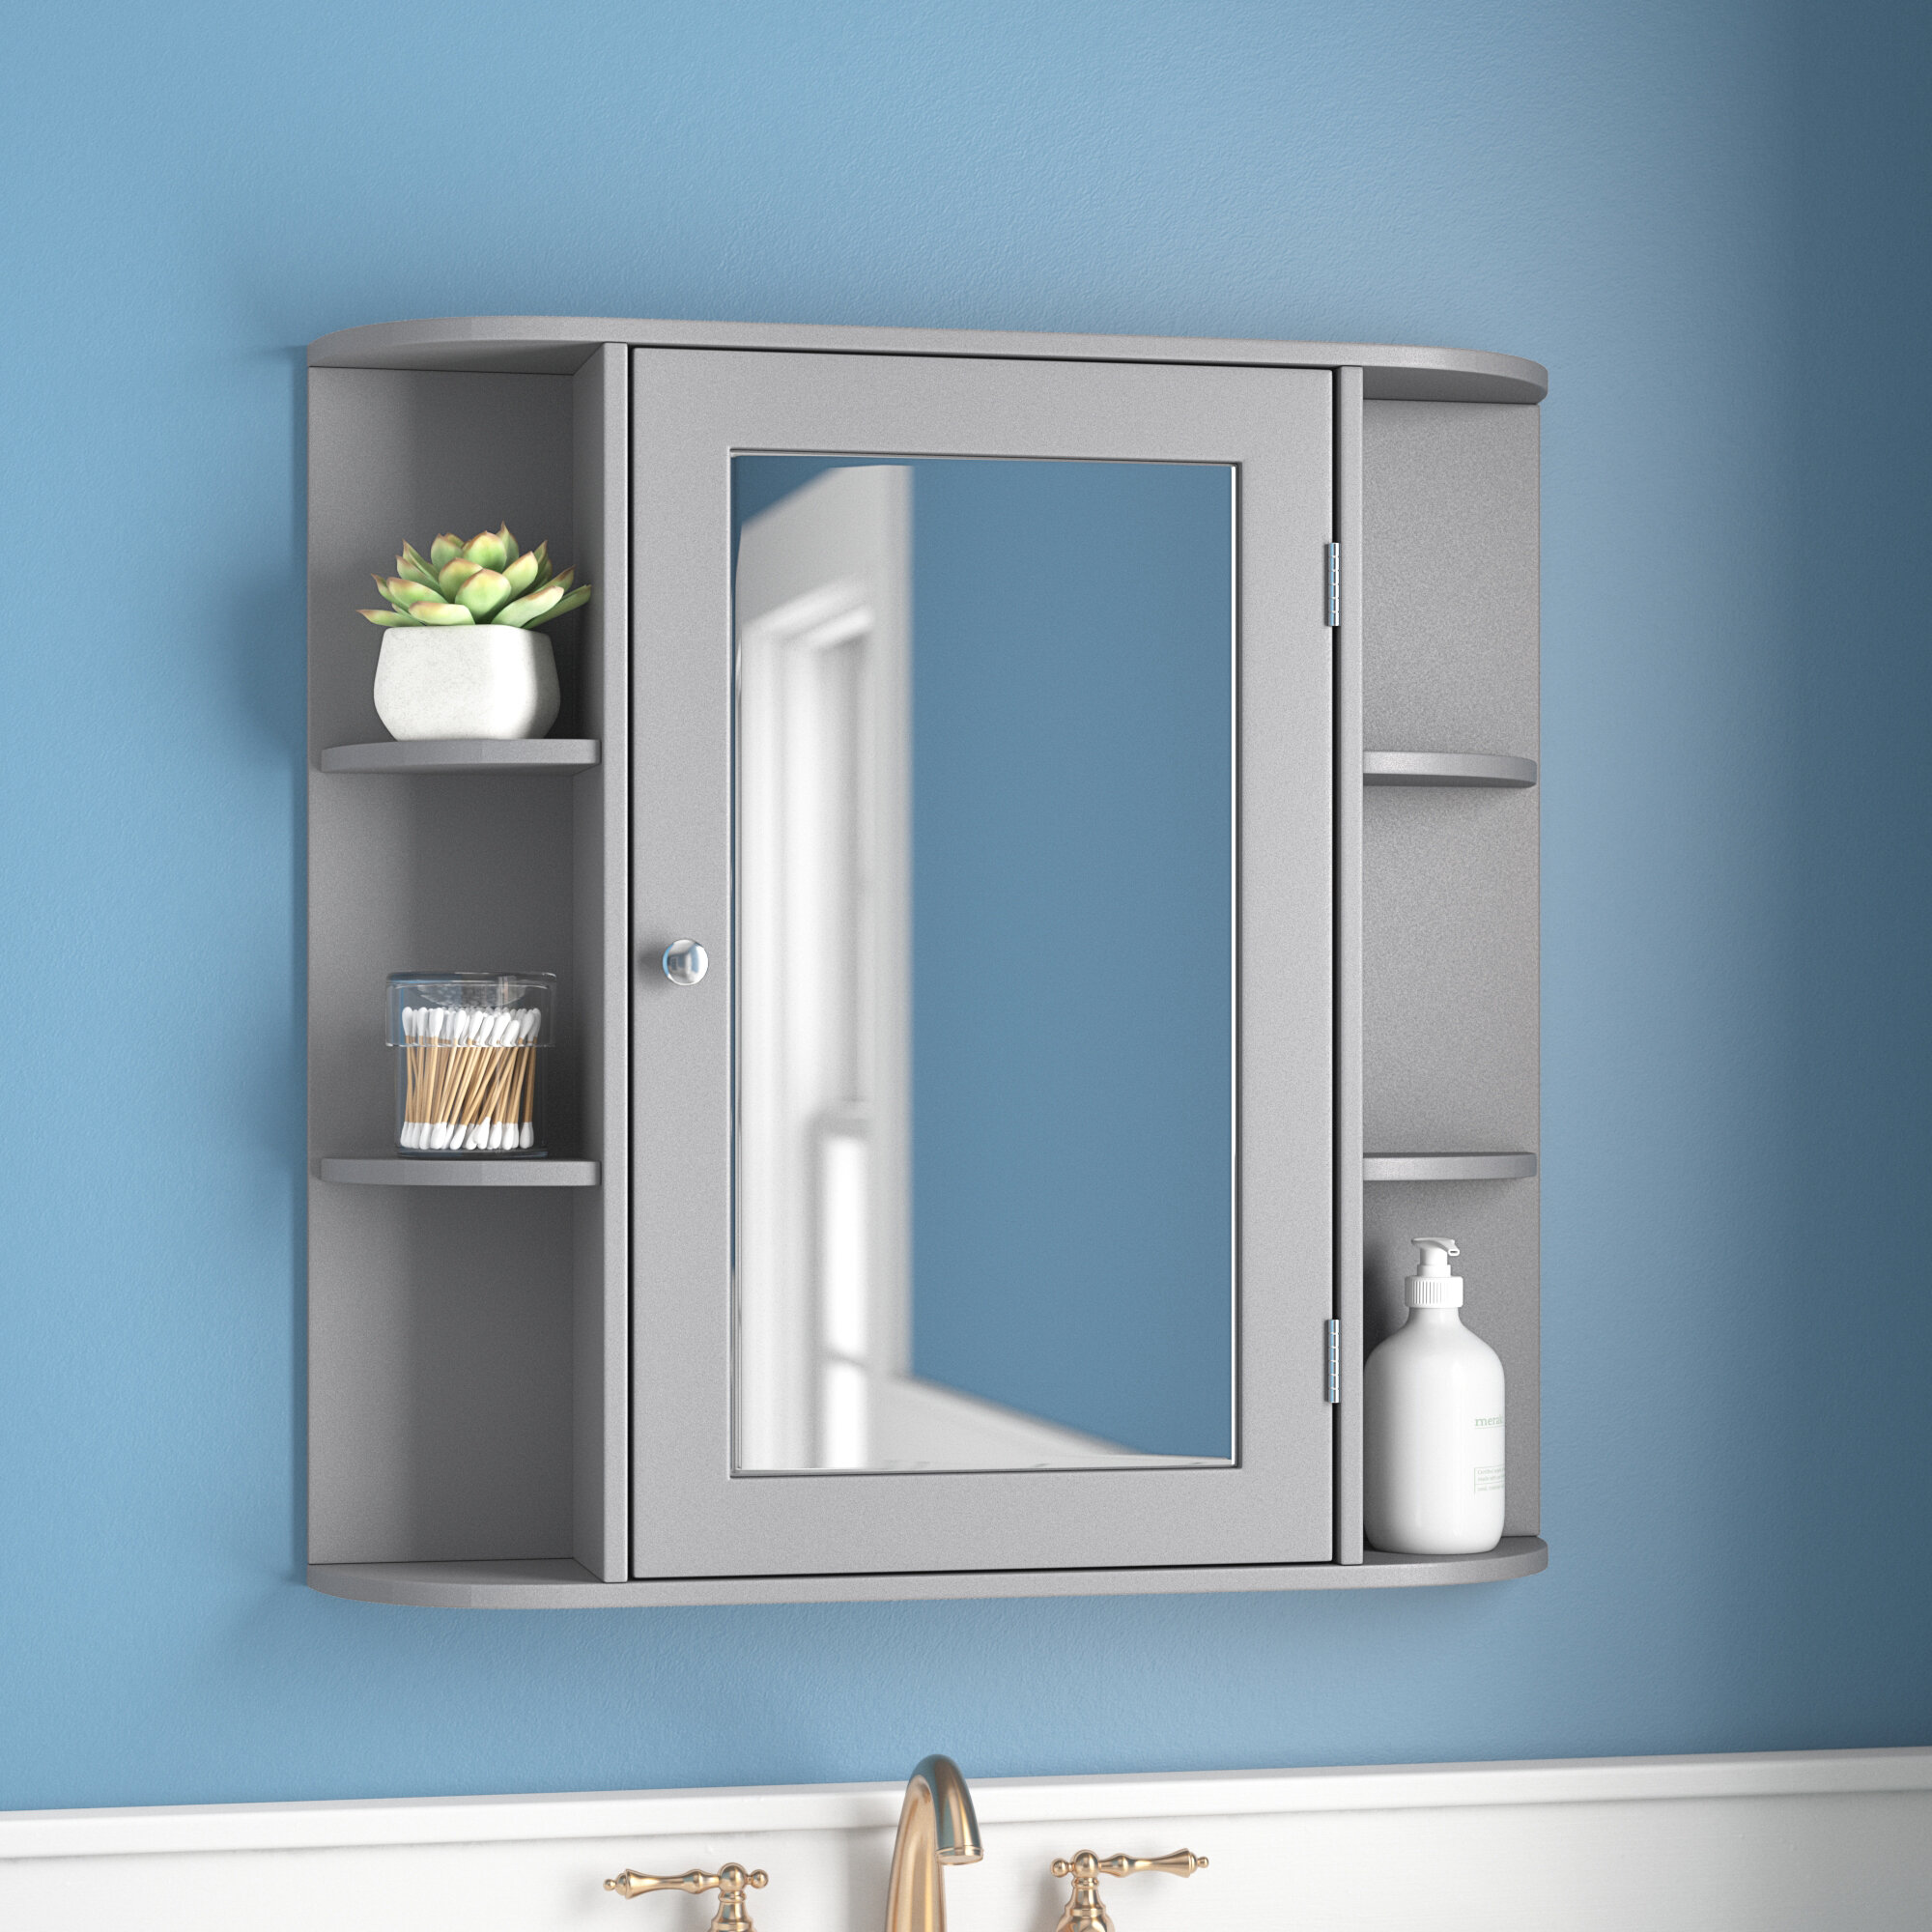 https://assets.wfcdn.com/im/64583527/compr-r85/1526/152612143/alinblot-26-w-x-25-h-x-5-d-wall-mounted-bathroom-cabinet.jpg